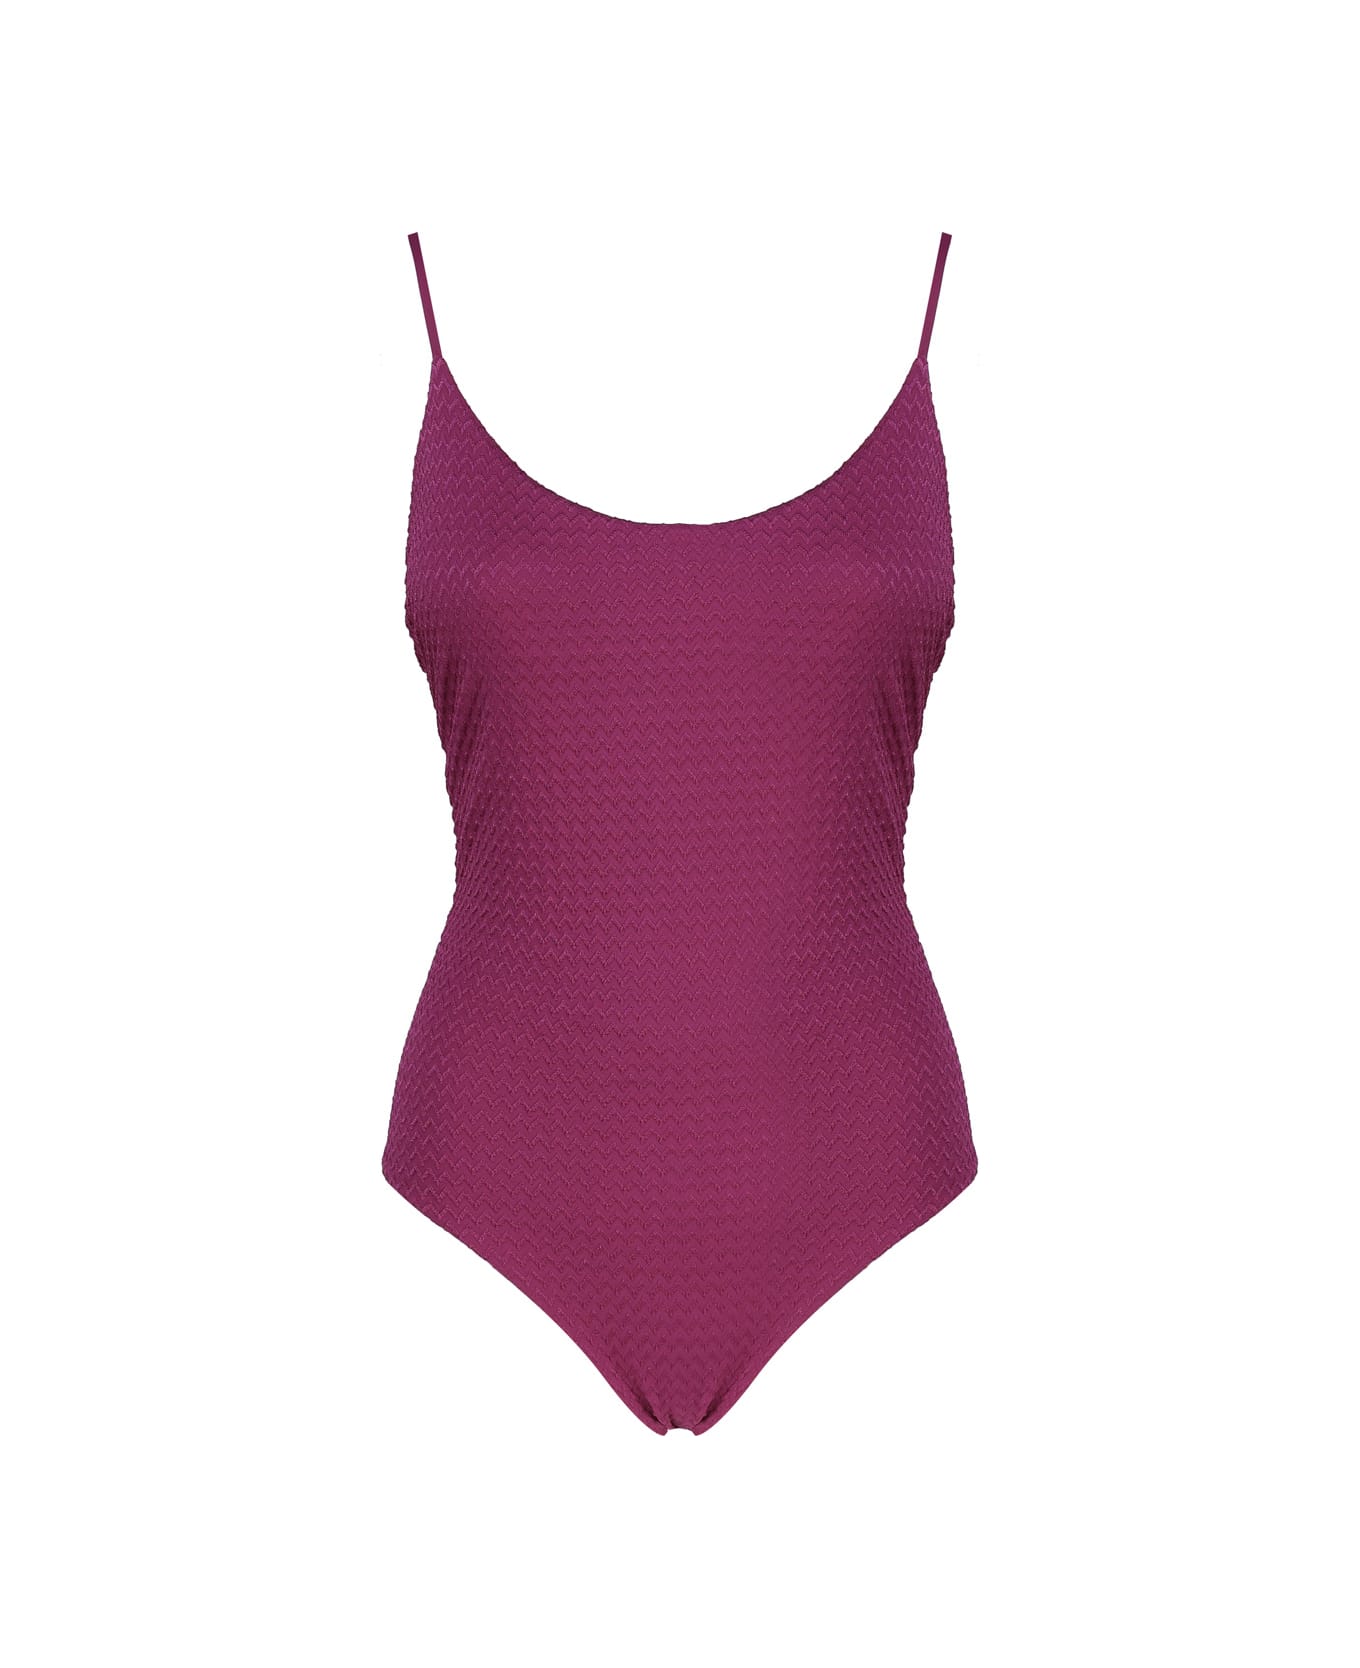 Fisico - Cristina Ferrari Solid Color One-piece Swimsuit - Sangria